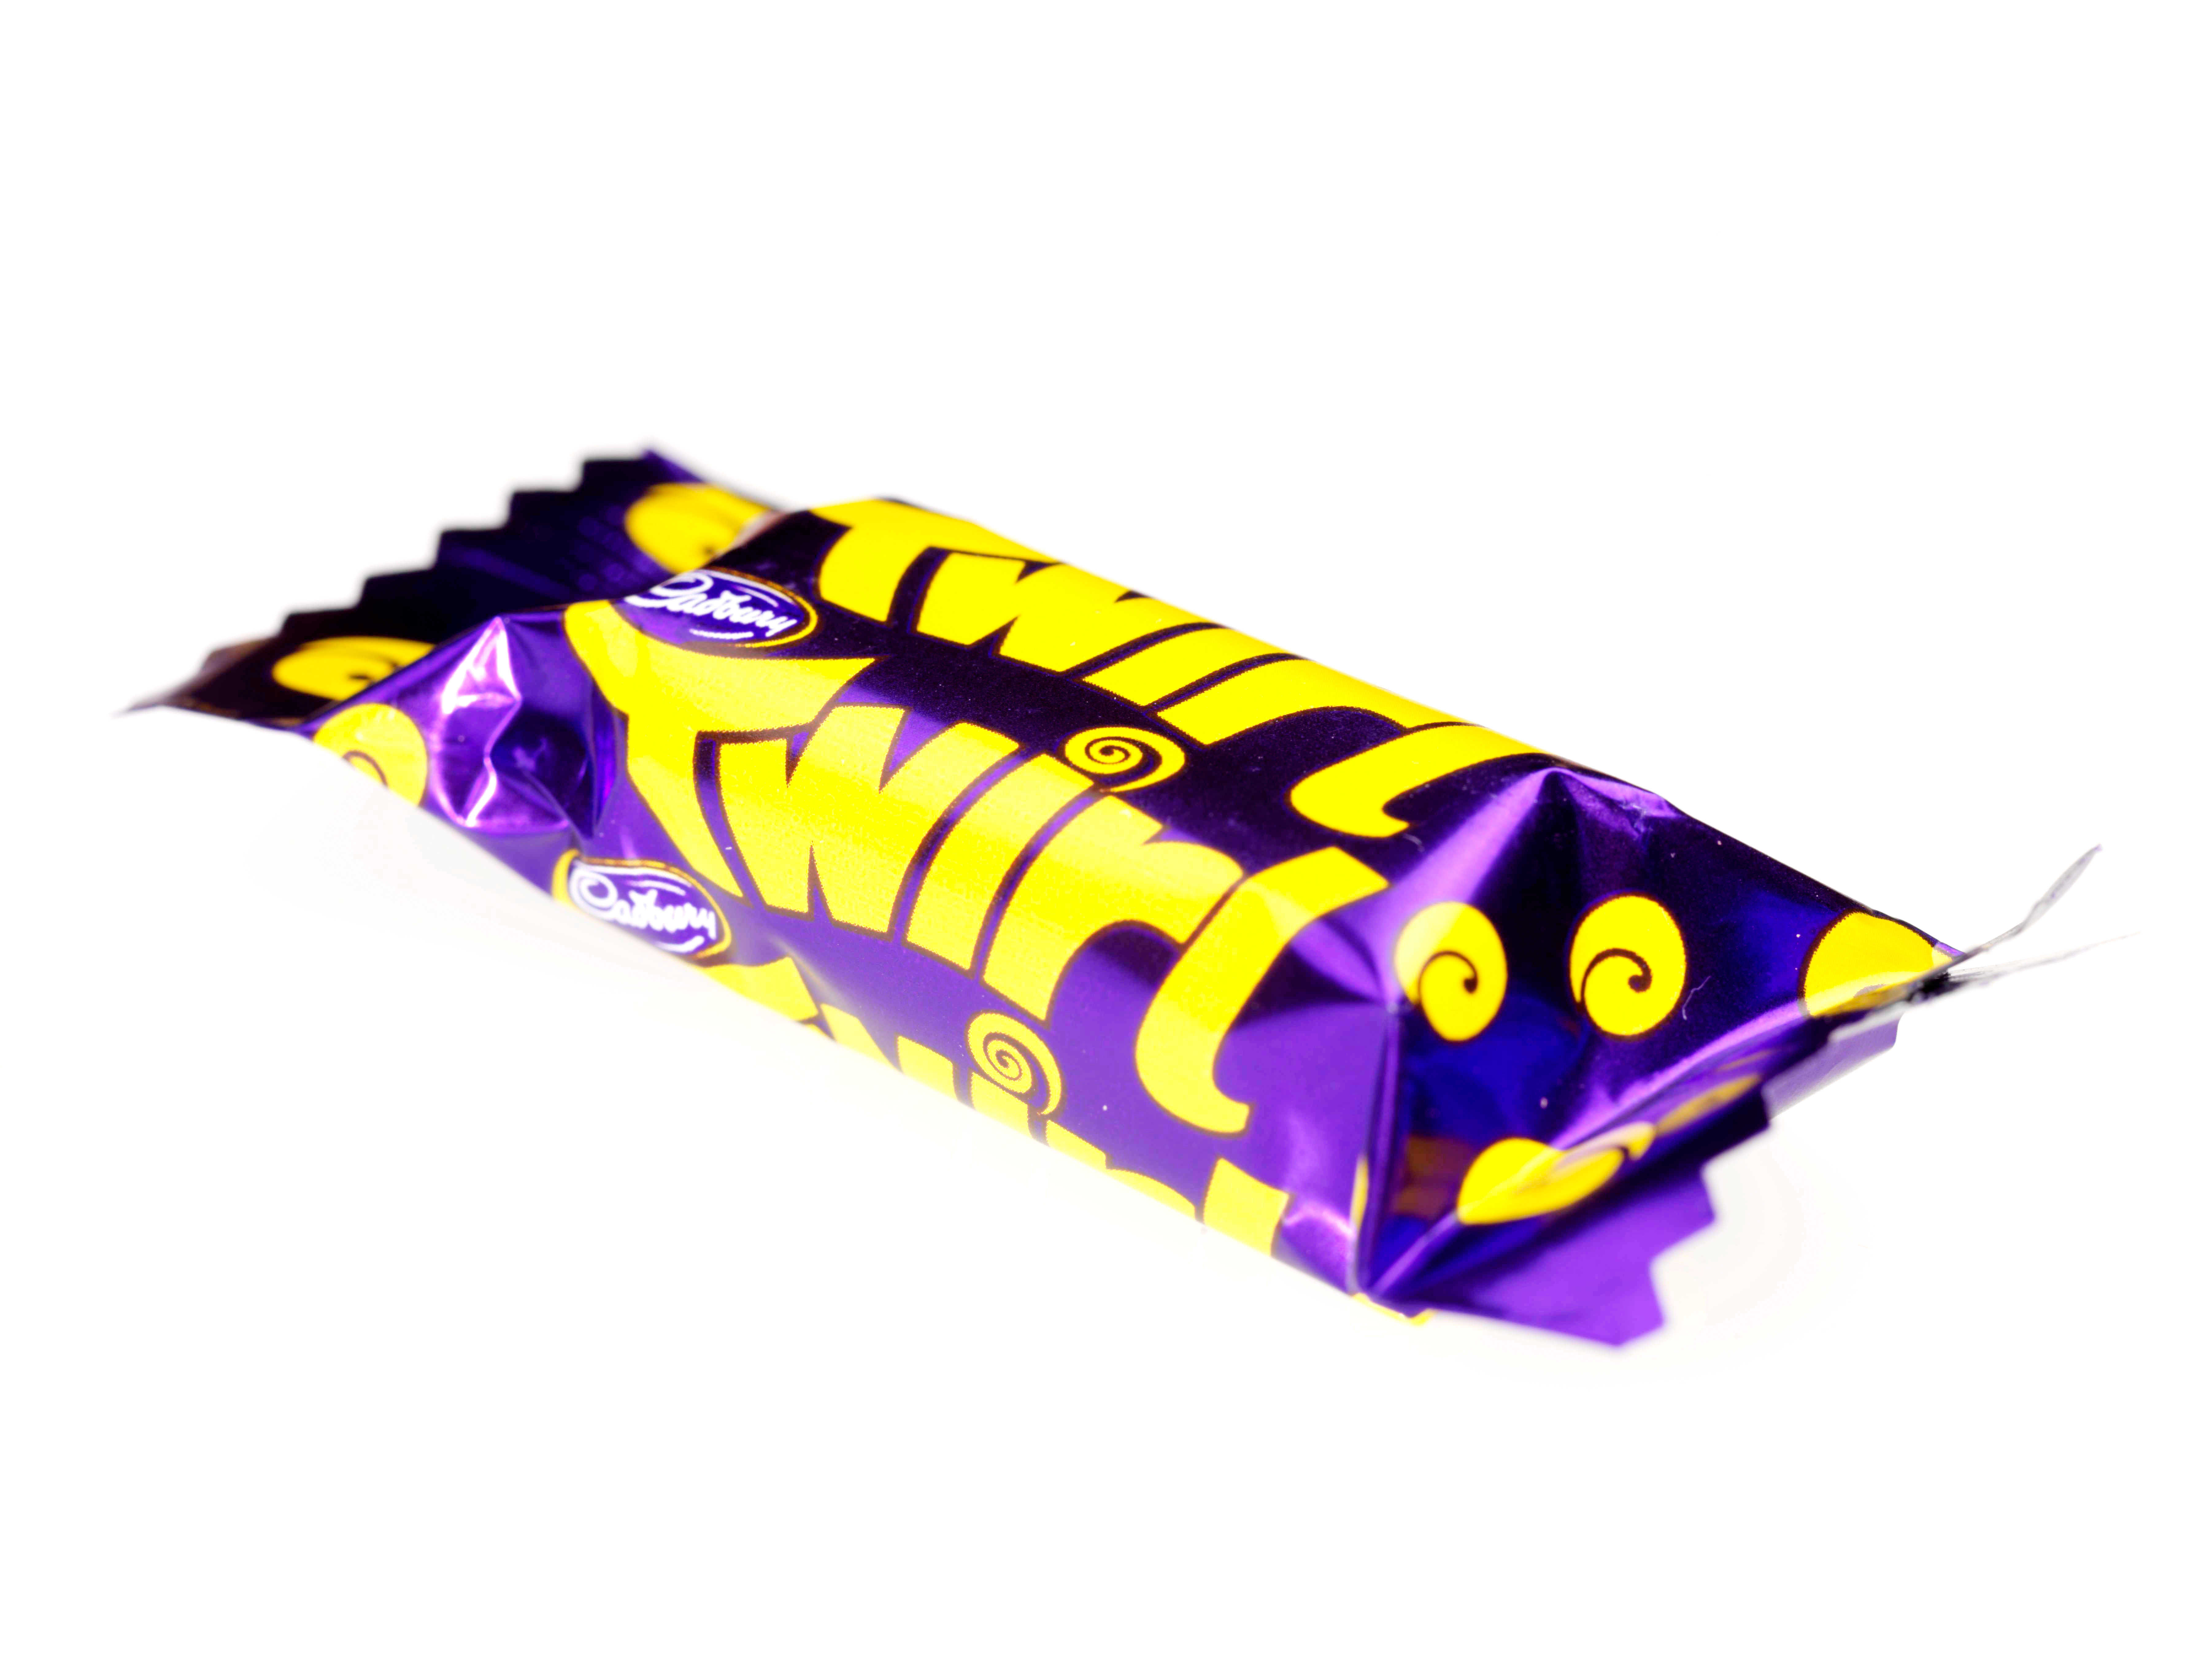 Twirl-Riegel sind mittlerweile die meistverkauften Schokoladen von Cadbury